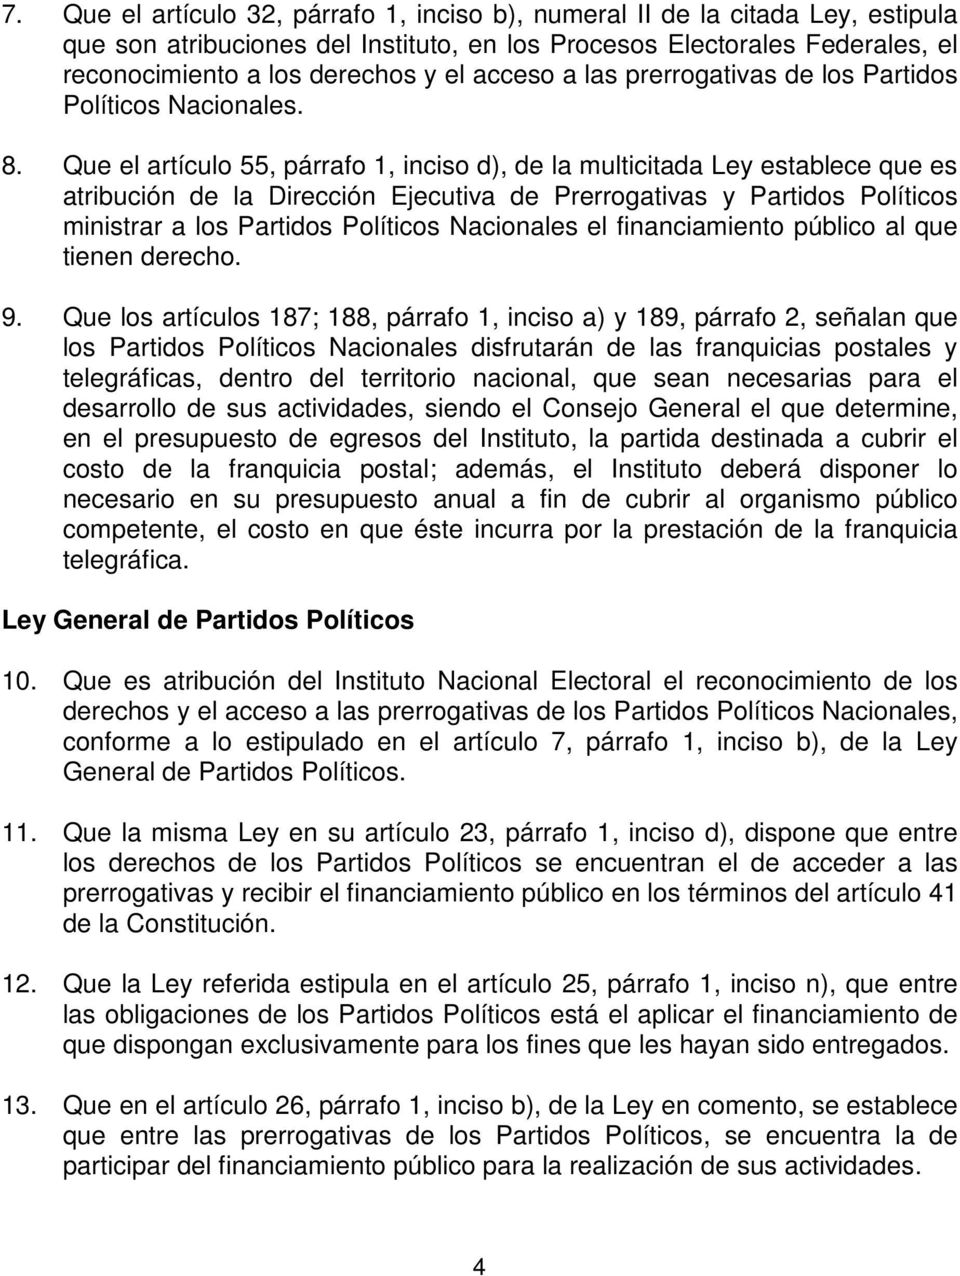 Que el artículo 55, párrafo 1, inciso d), de la multicitada Ley establece que es atribución de la Dirección Ejecutiva de Prerrogativas y Partidos Políticos ministrar a los Partidos Políticos